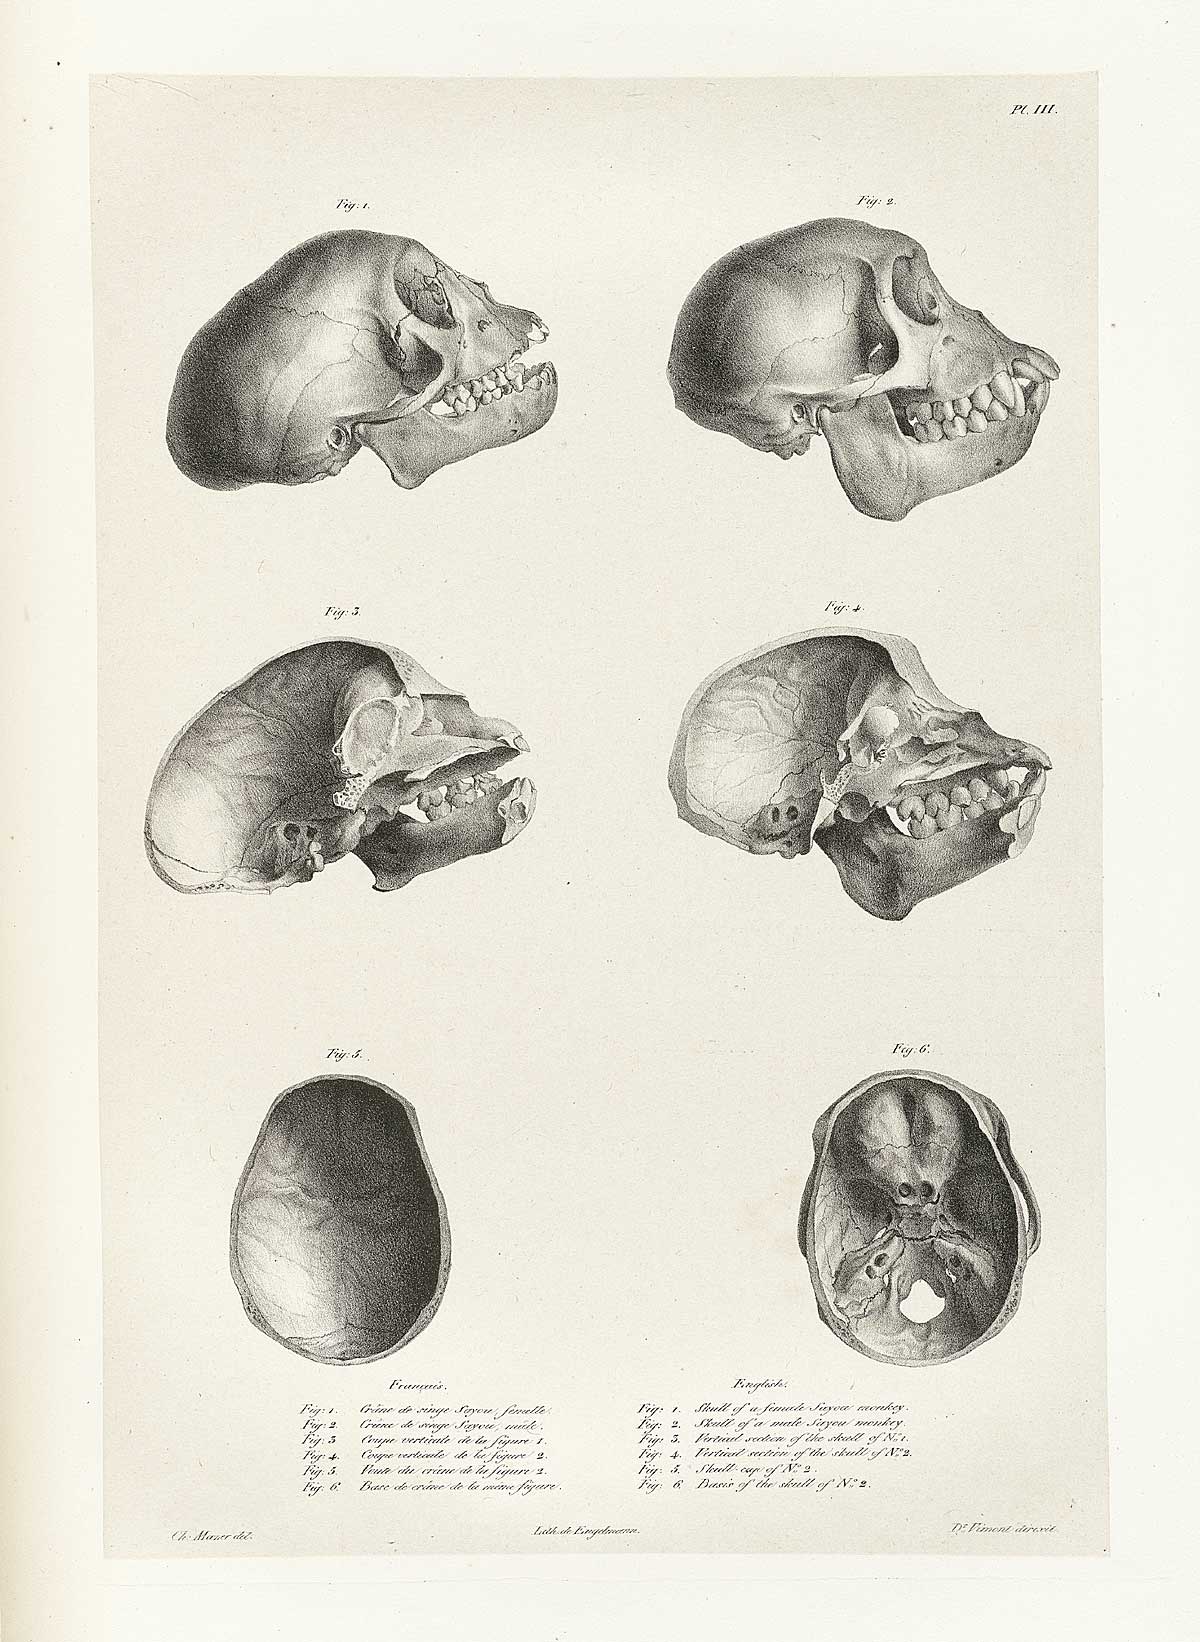 Table 3 of Joseph Vimont's Traité de phrénologie humaine et comparée, featuring side and top views of 6 monkey skulls.